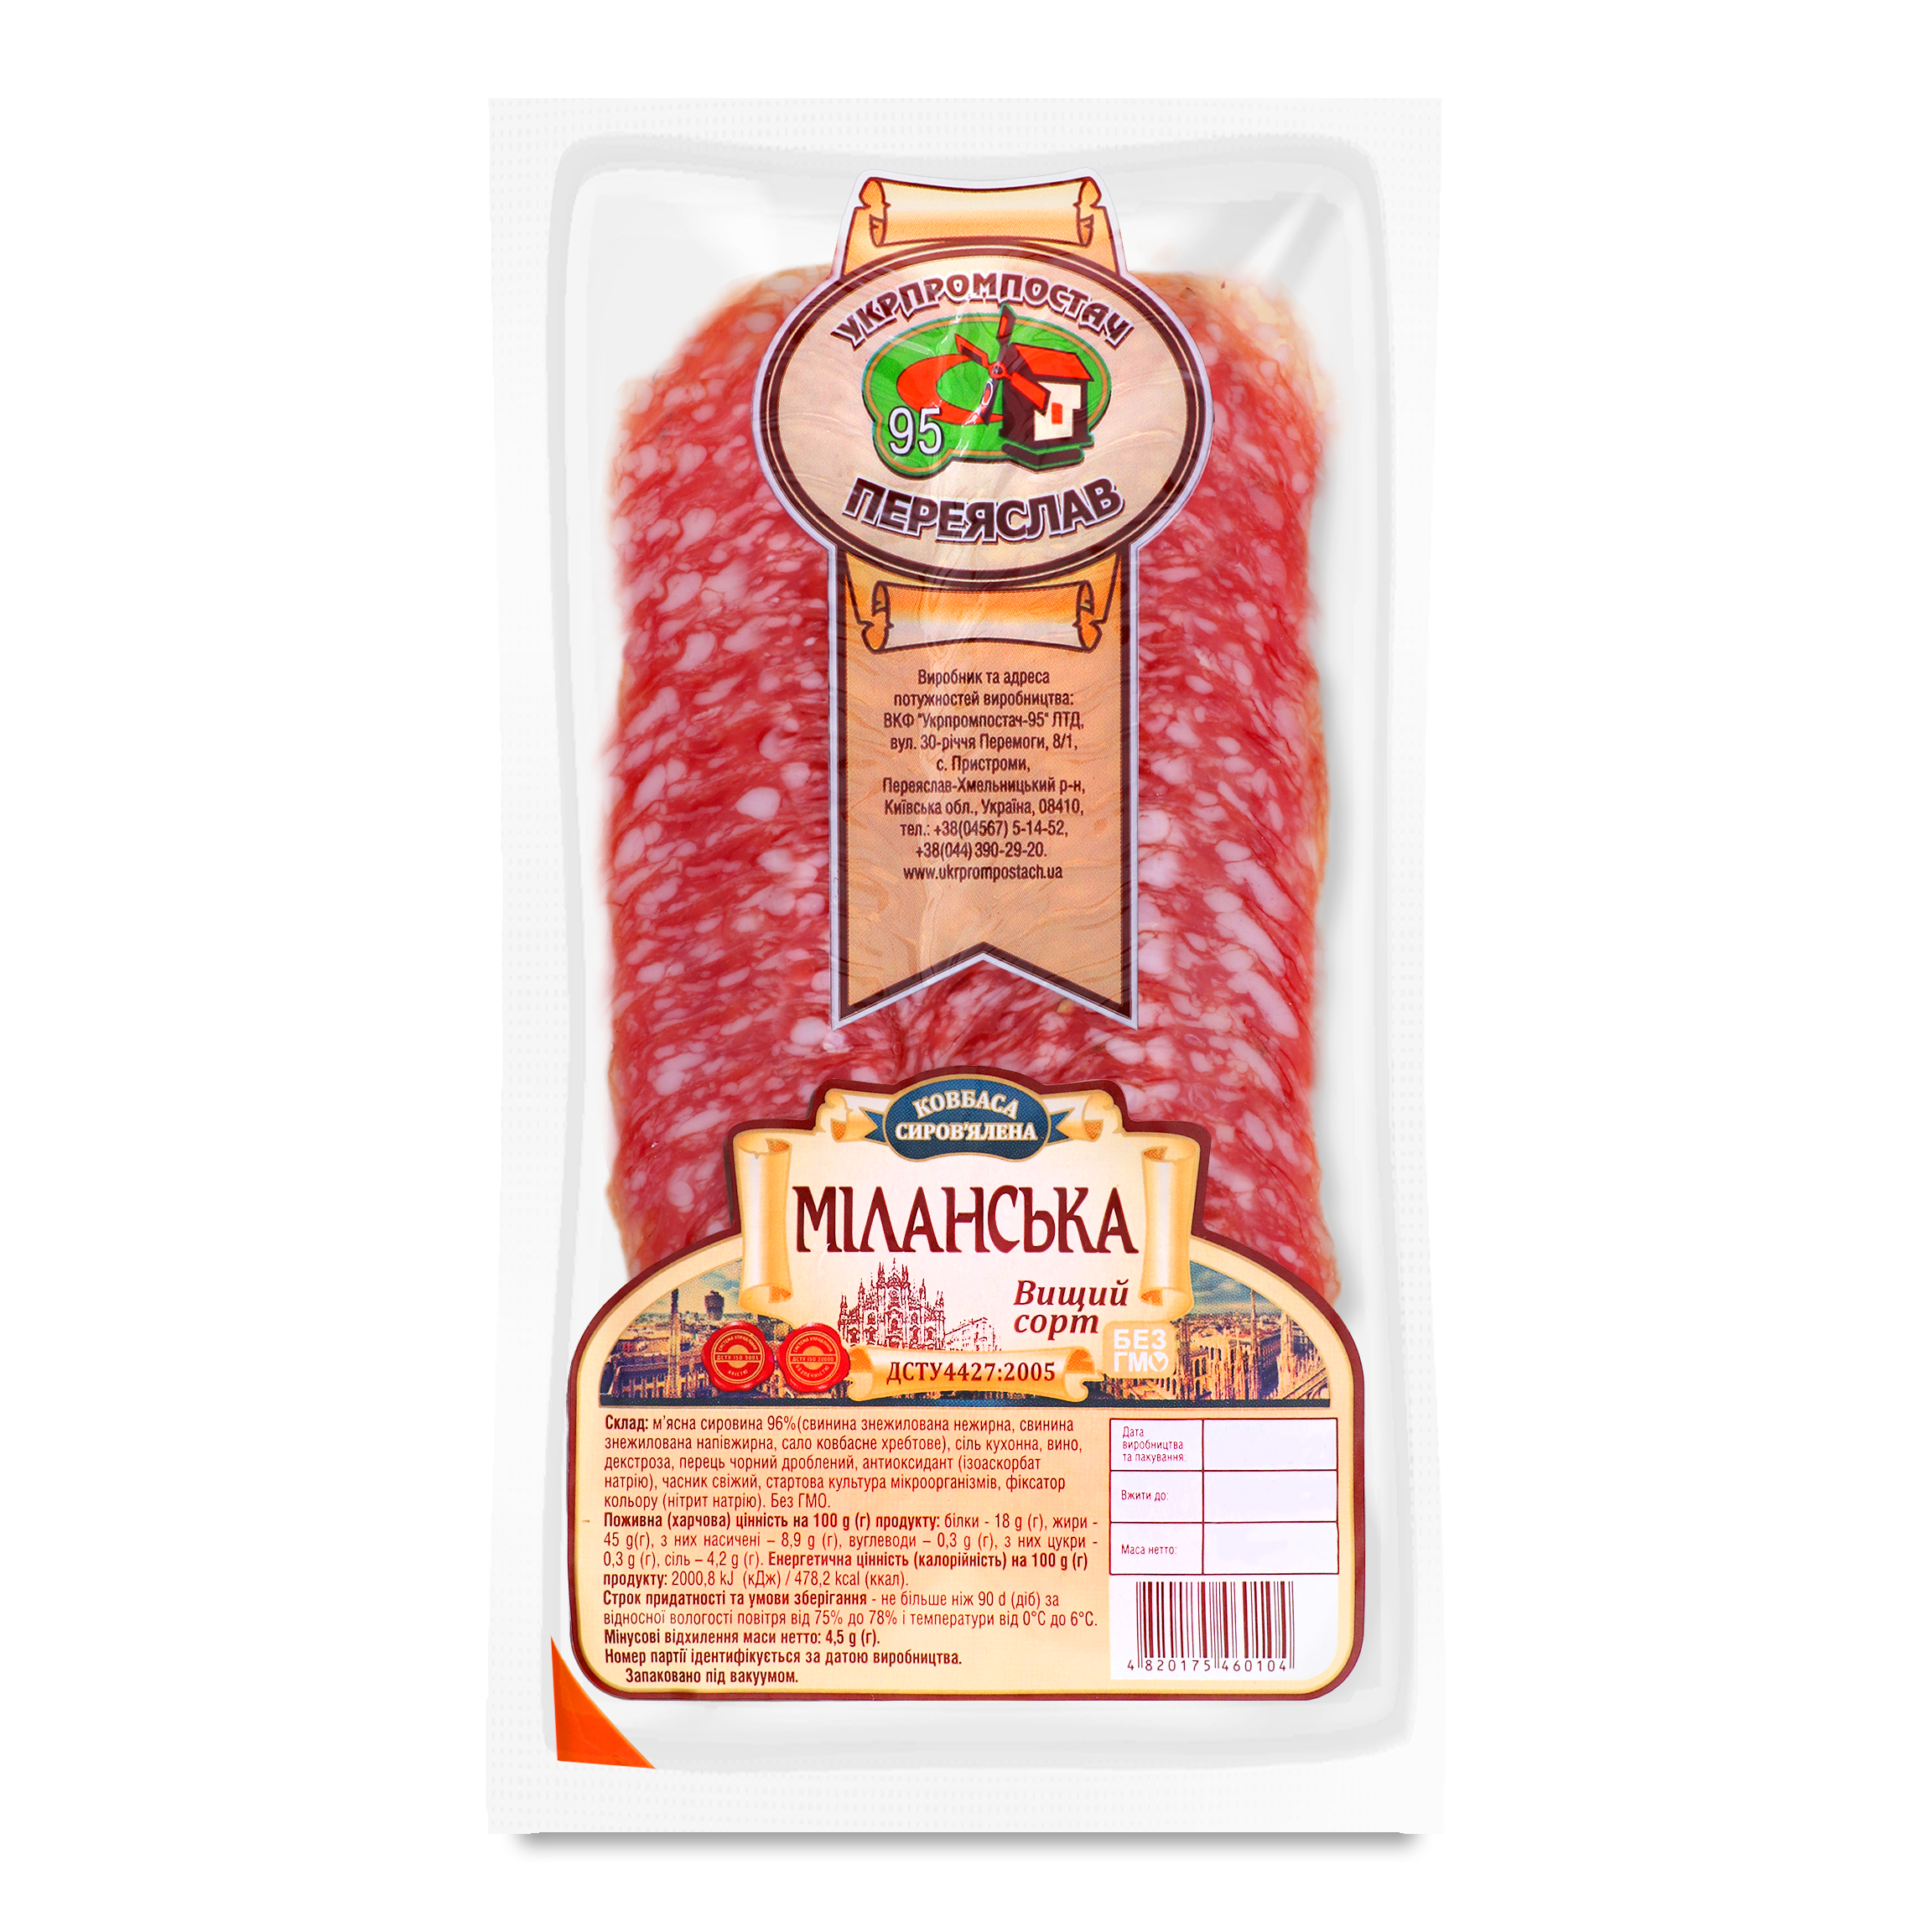 Ukrprompostach-95 Milanska Sliced Dry-cured Sausage 80g 2